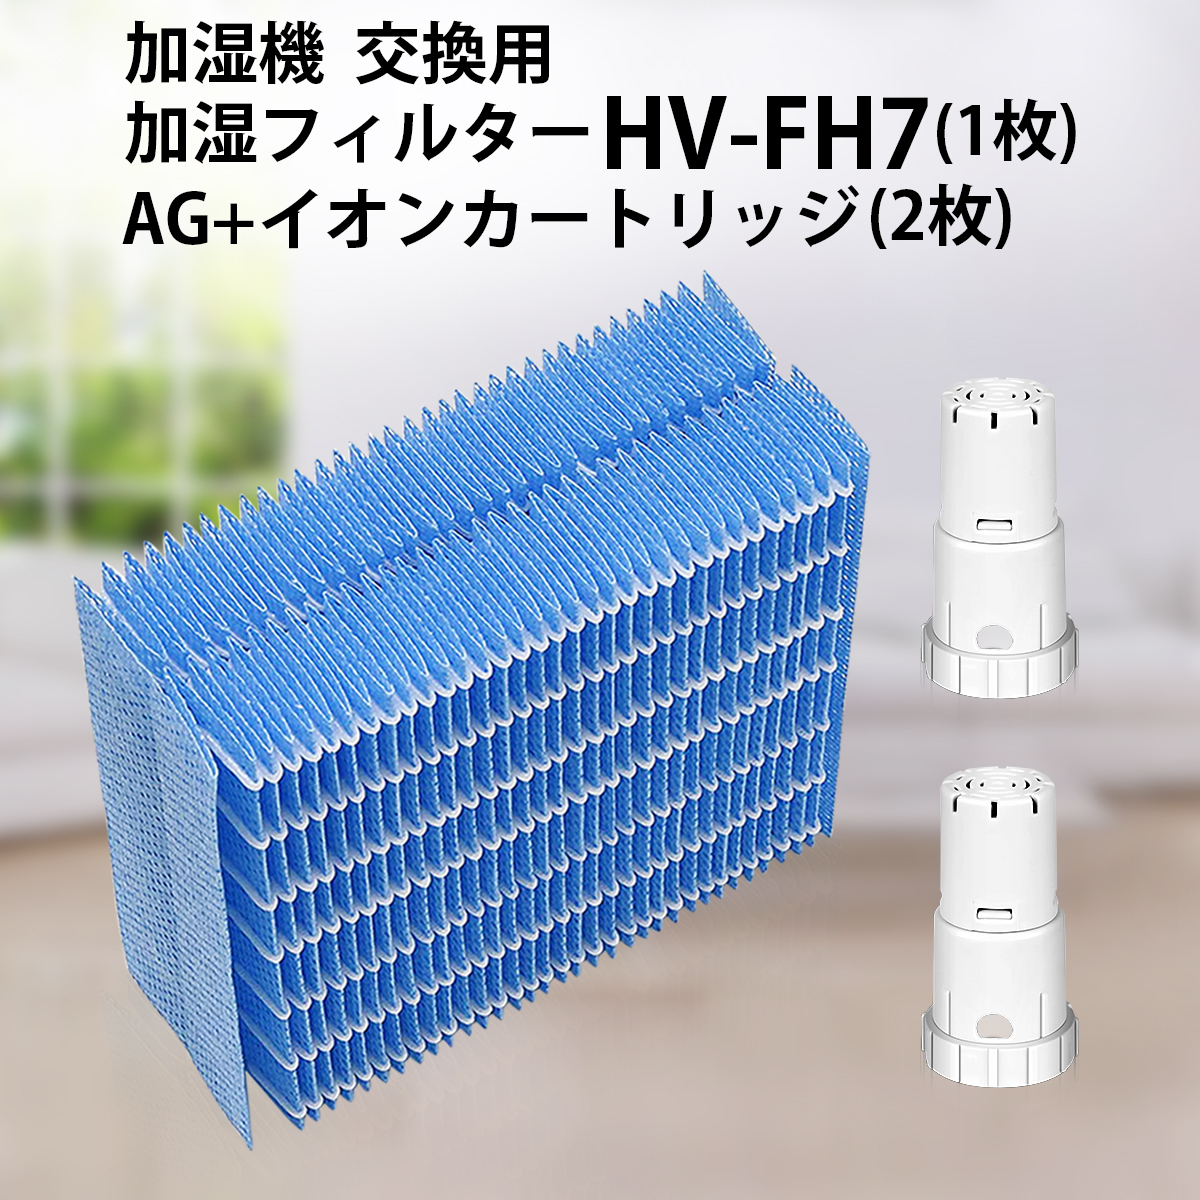 加湿フィルター HV-FH7 シャープ 加湿器 フィルター hv-fh7 ag+イオンカートリッジ FZ-AG01K2 fz-ag01k1  気化式加湿機 HV-H55 HV-H75 HV-J55 HV-J75 HV-L75 HV-L55 HV-H55E6交換用 (互換品/3枚セット)  空気清浄機フィルターのWEST